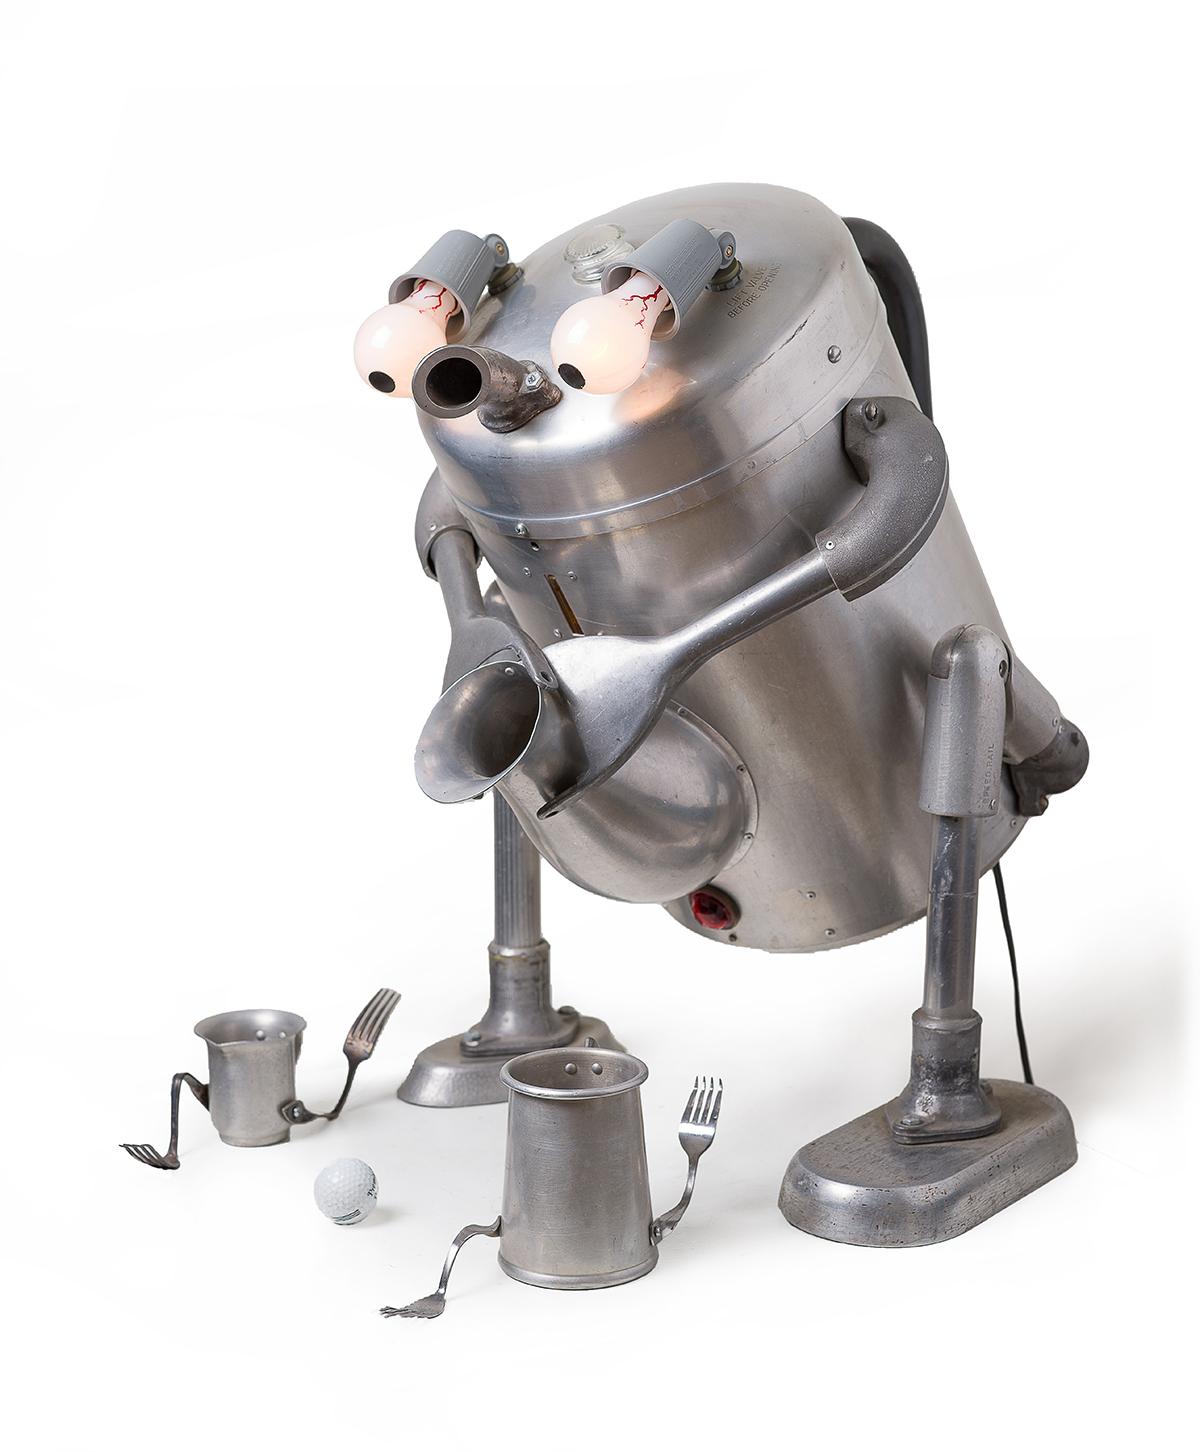 Robot Teapot Chasing Cups & Ball